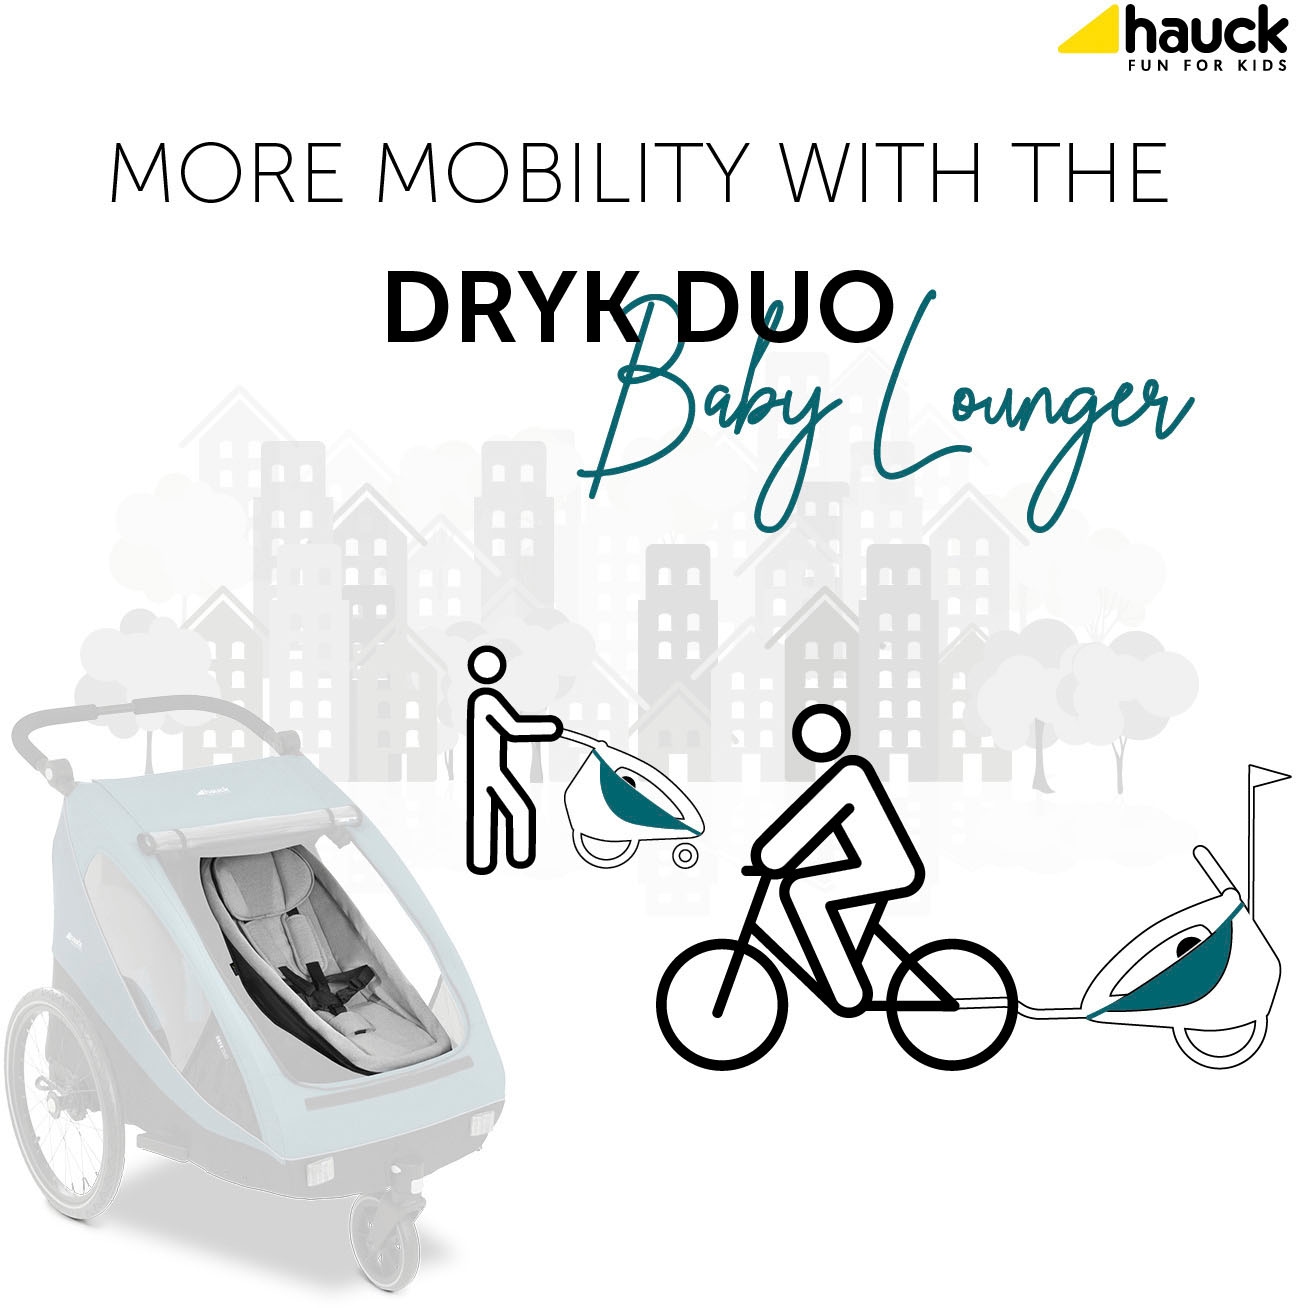 Hauck Fahrradkinderanhänger »Neugeboreneneinsatz Baby Lounger«, mit Beindecke und Kopfpolster, für Dryk Duo Fahrradanhänger